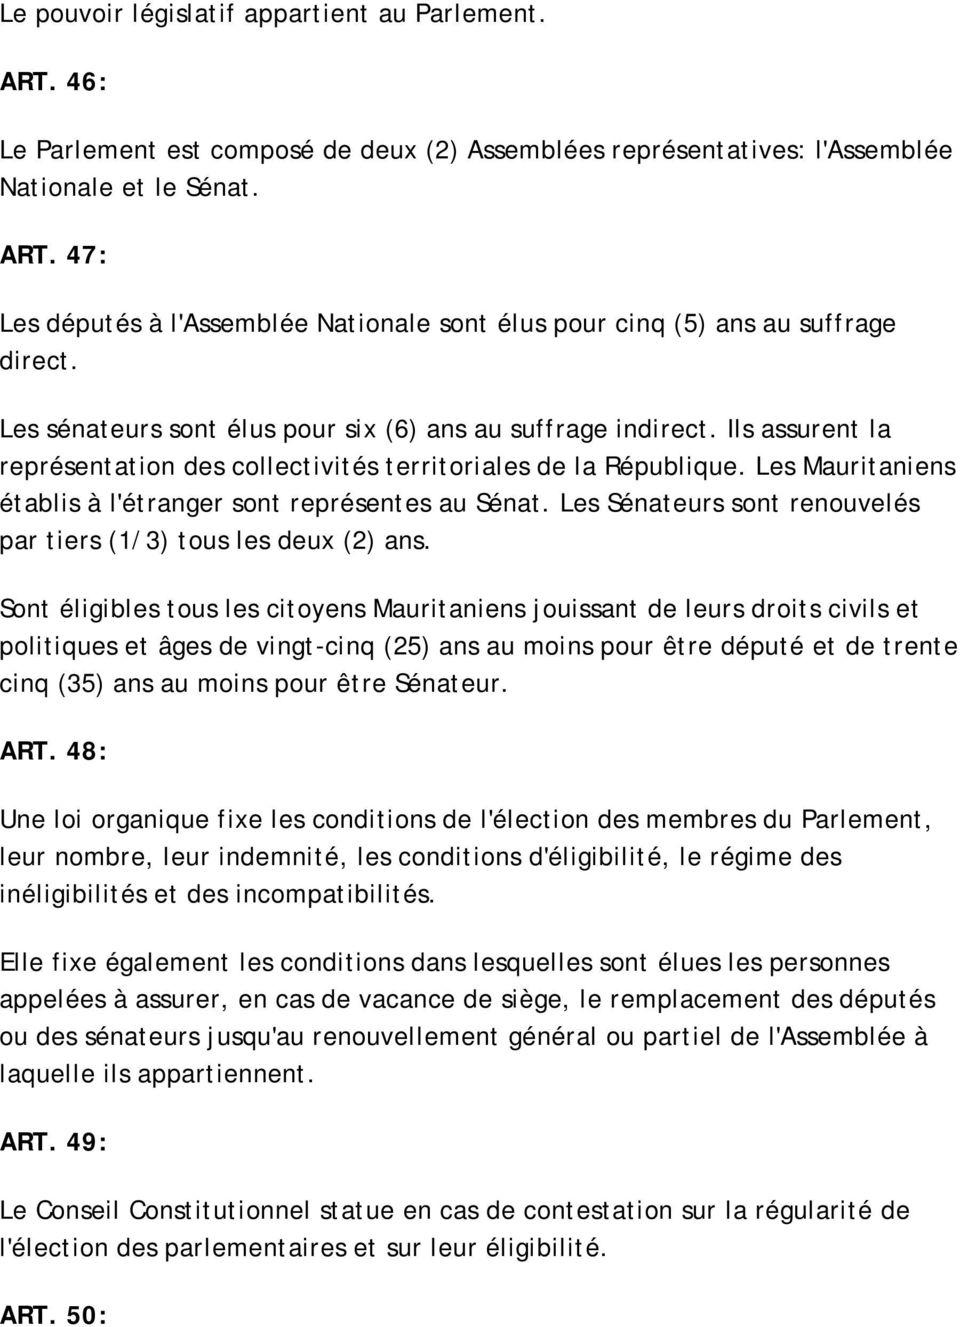 Les Mauritaniens établis à l'étranger sont représentes au Sénat. Les Sénateurs sont renouvelés par tiers (1/3) tous les deux (2) ans.